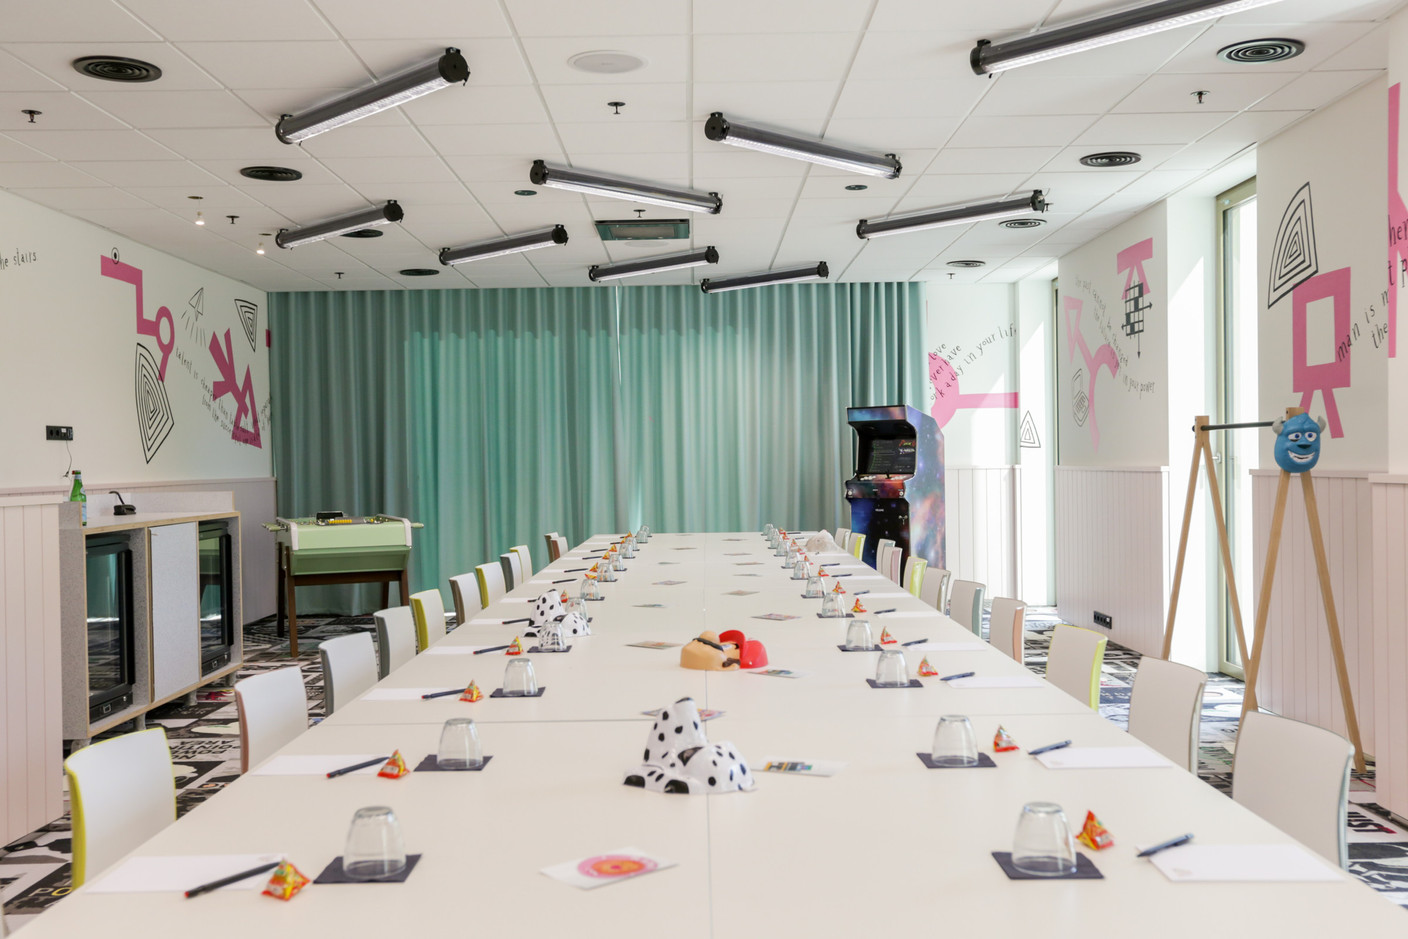 Les Ateliers sont des salles qui permettent les réunions au sein de l’espace de coworking. (Photo: Romain Gamba / Maison Moderne)